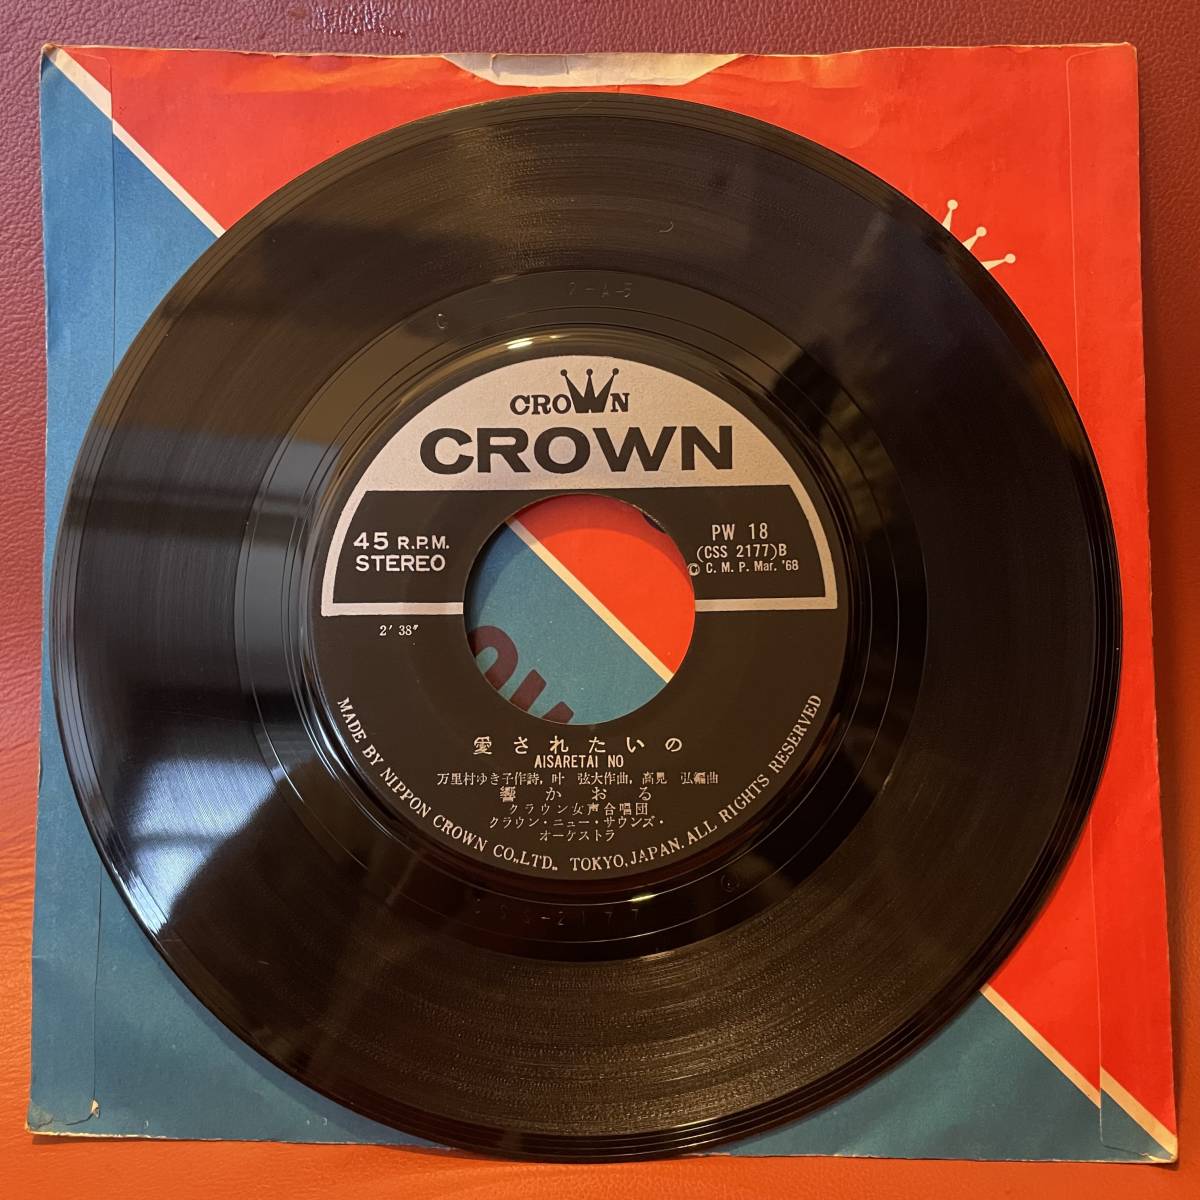 響かおる - 太陽がこわいの / 愛されたいの EP CROWN PW-18 1968年 和モノ グルーヴ歌謡 高見弘_画像4